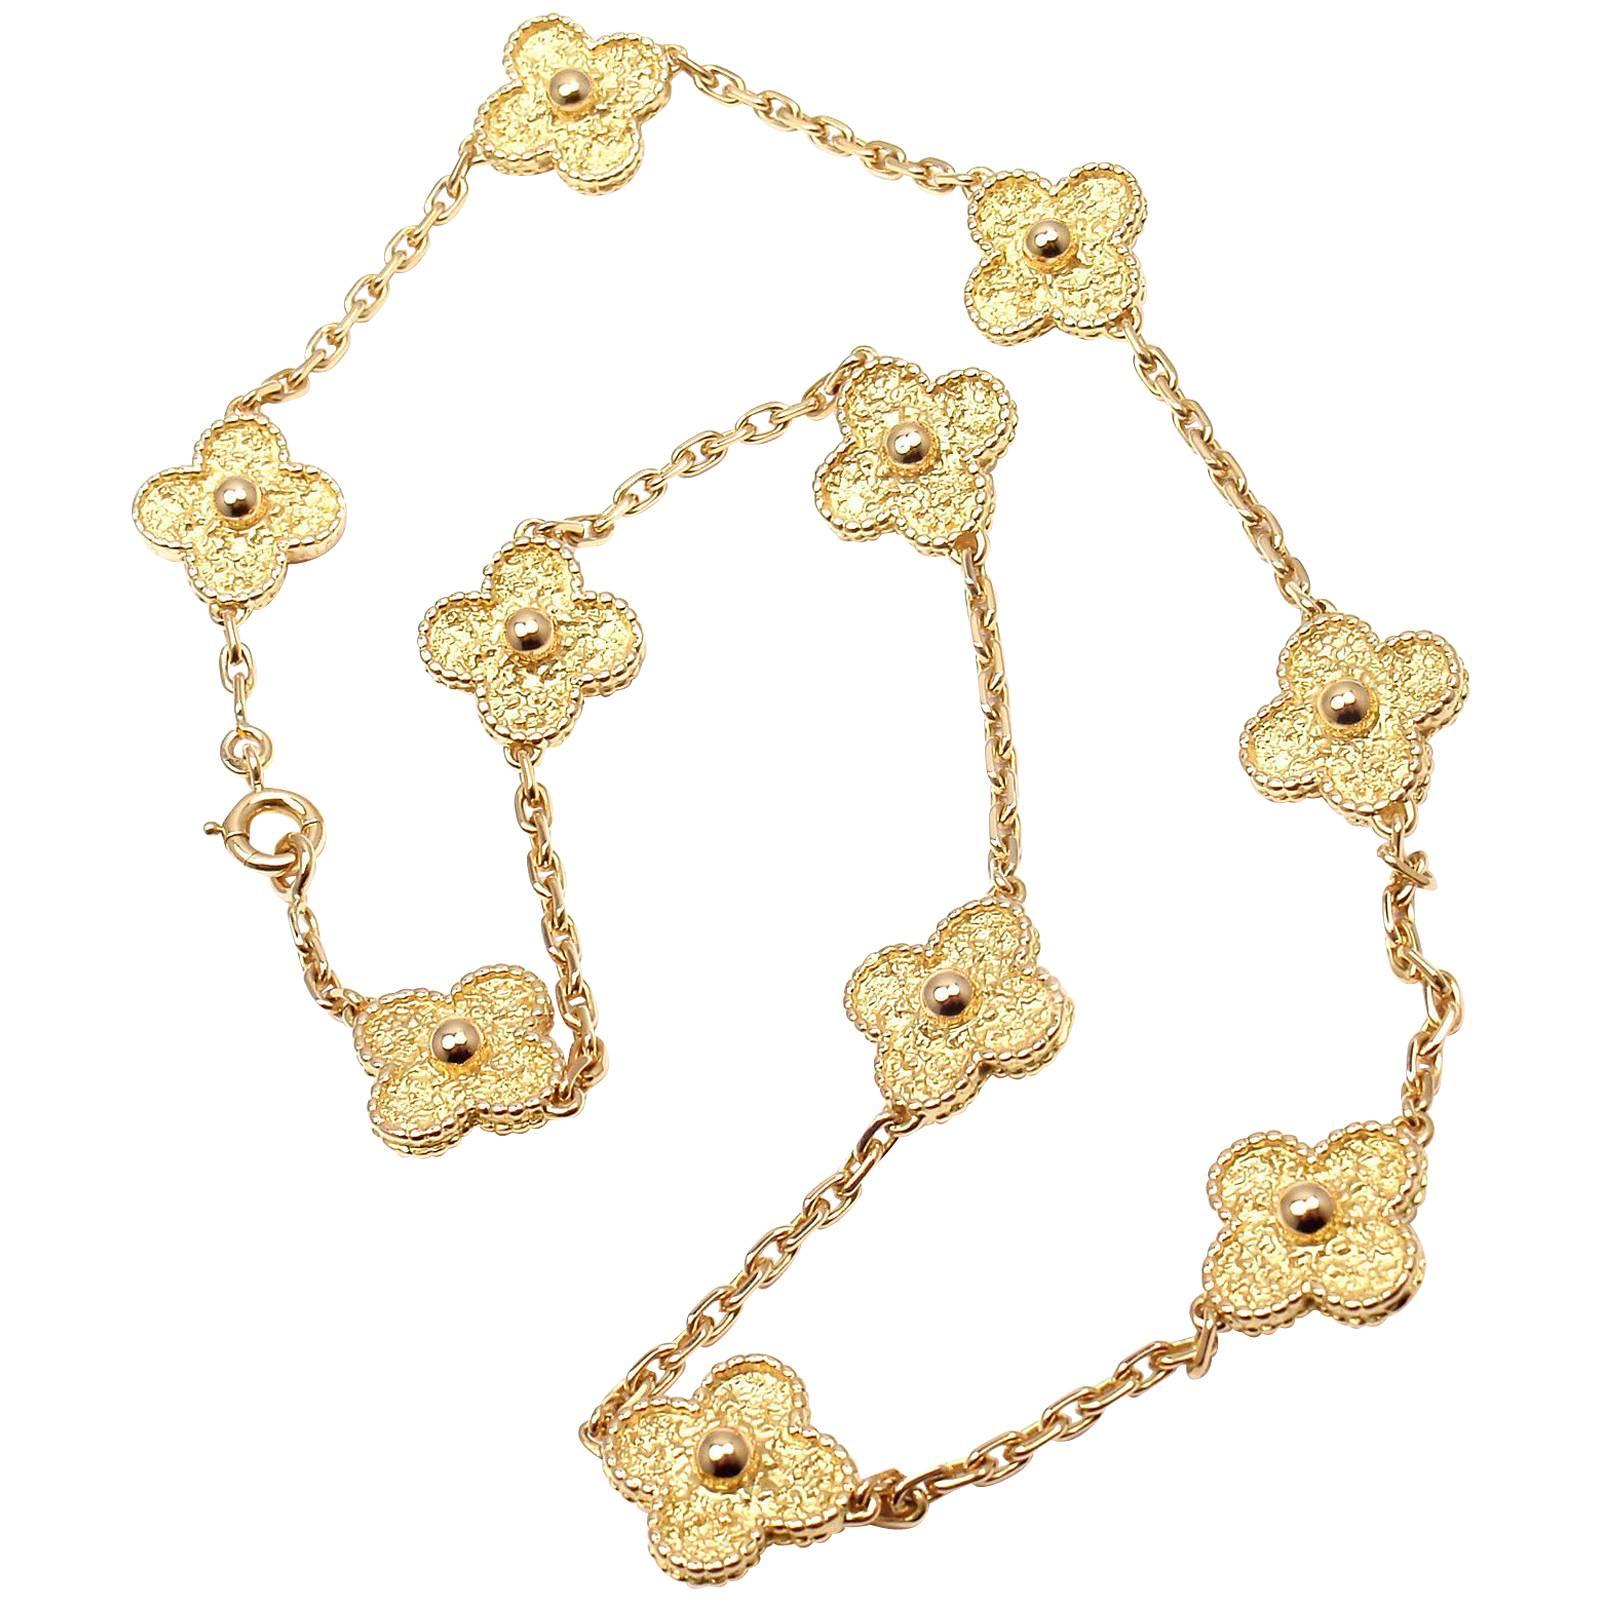 Van Cleef & Arpels Vintage Alhambra 10 Motif Gold Necklace